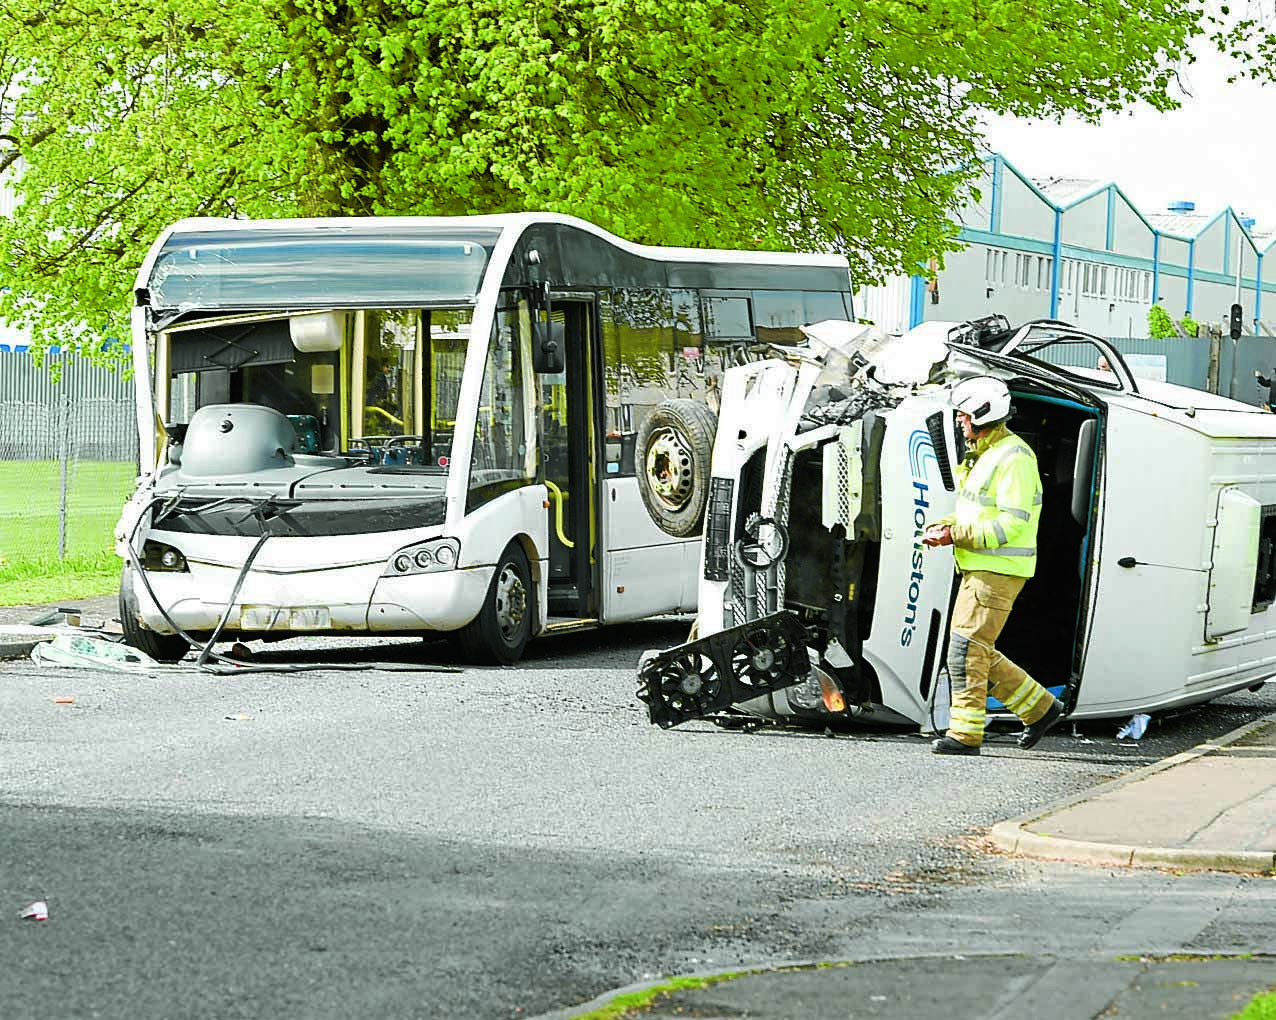 Bus crash still under investigation